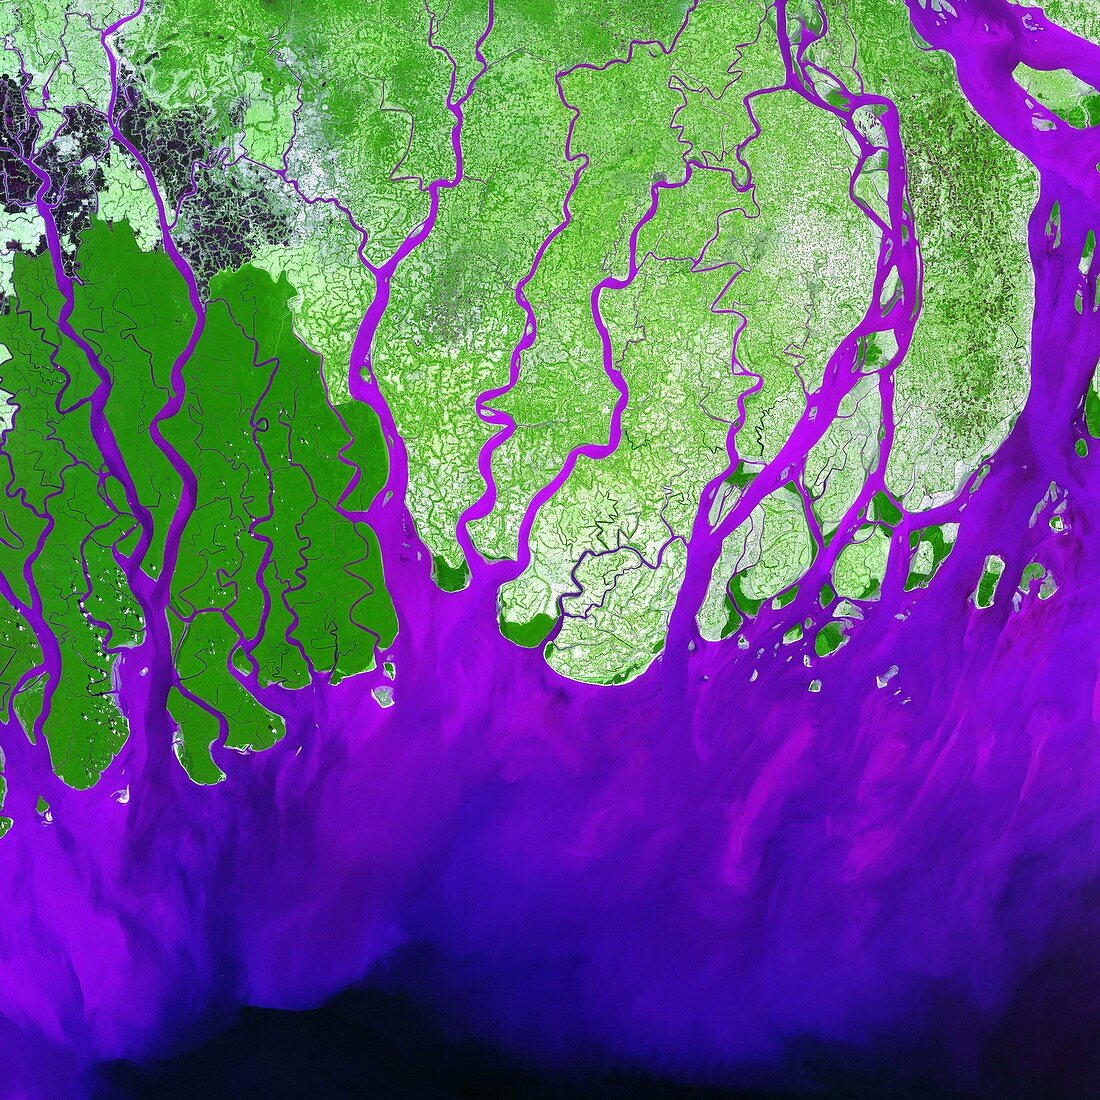 Ganges Delta